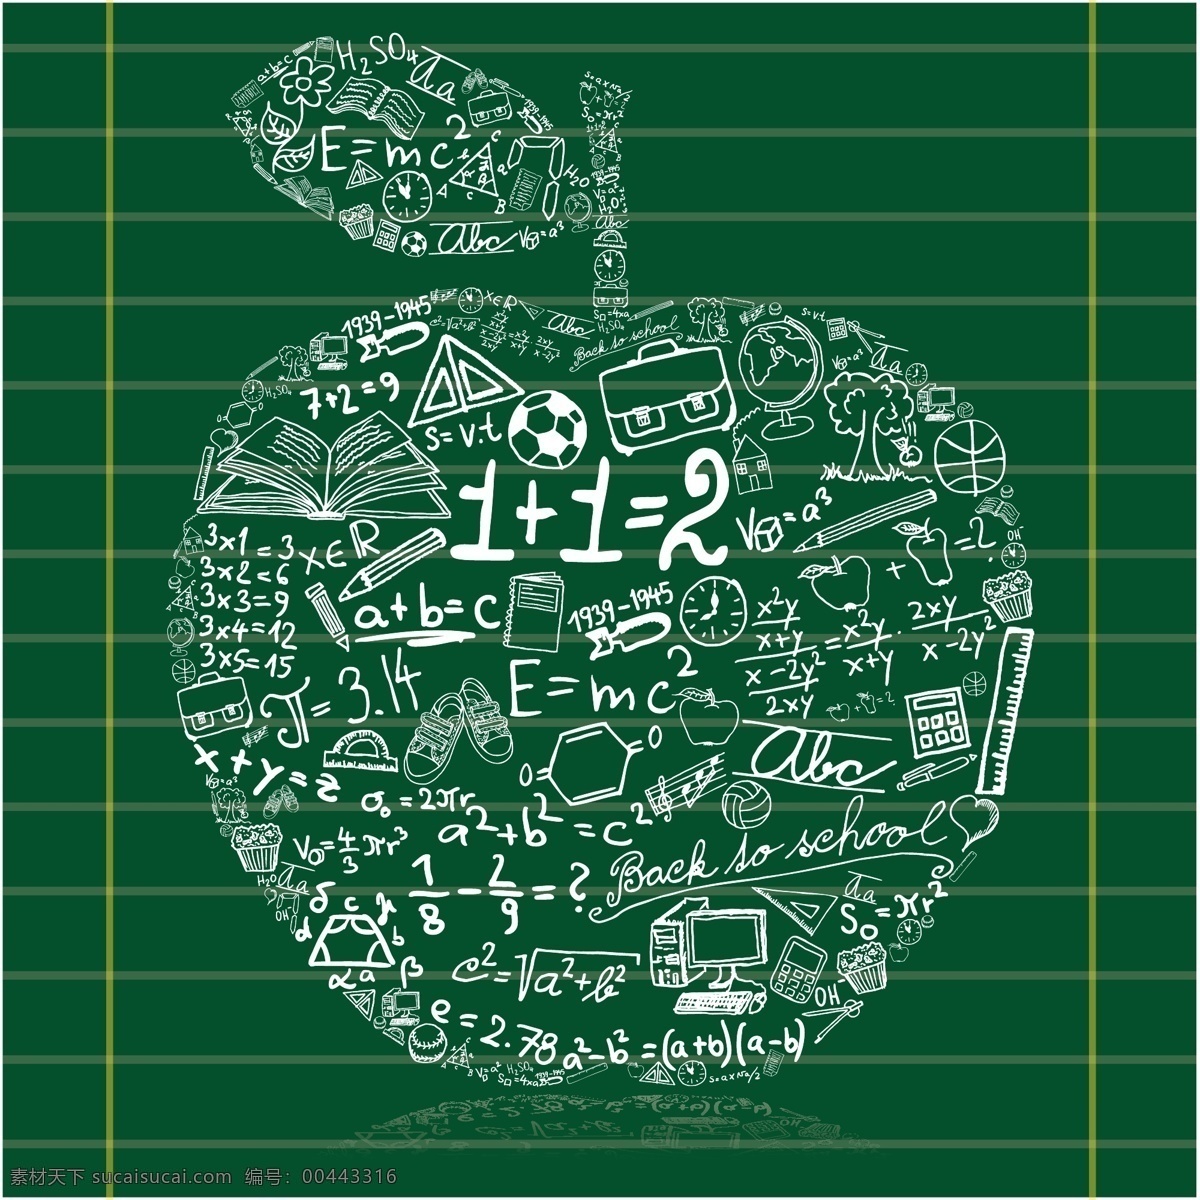 创意 粉笔字 黑板 美术绘画 苹果 生活百科 文化艺术 学习用品 数学 公式 矢量 模板下载 苹果数学公式 数学公式 手绘数学公式 手绘 矢量图 日常生活